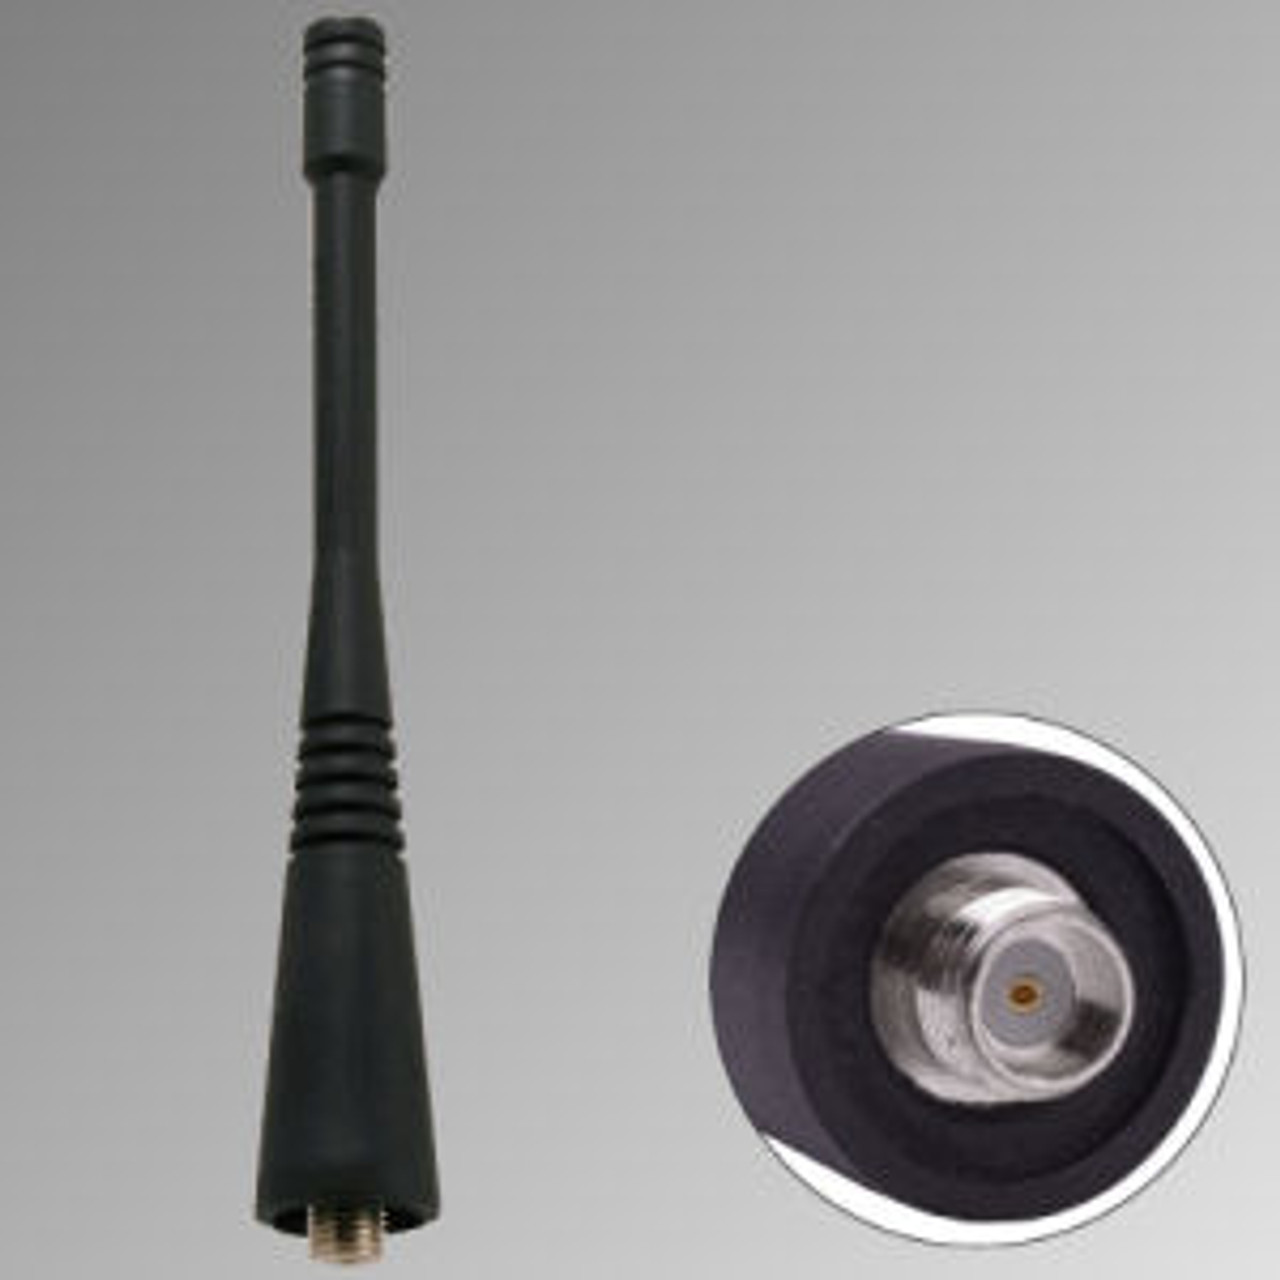 Kenwood TK-5410 Antenna - 4", Dual-Band, 698-870 MHz